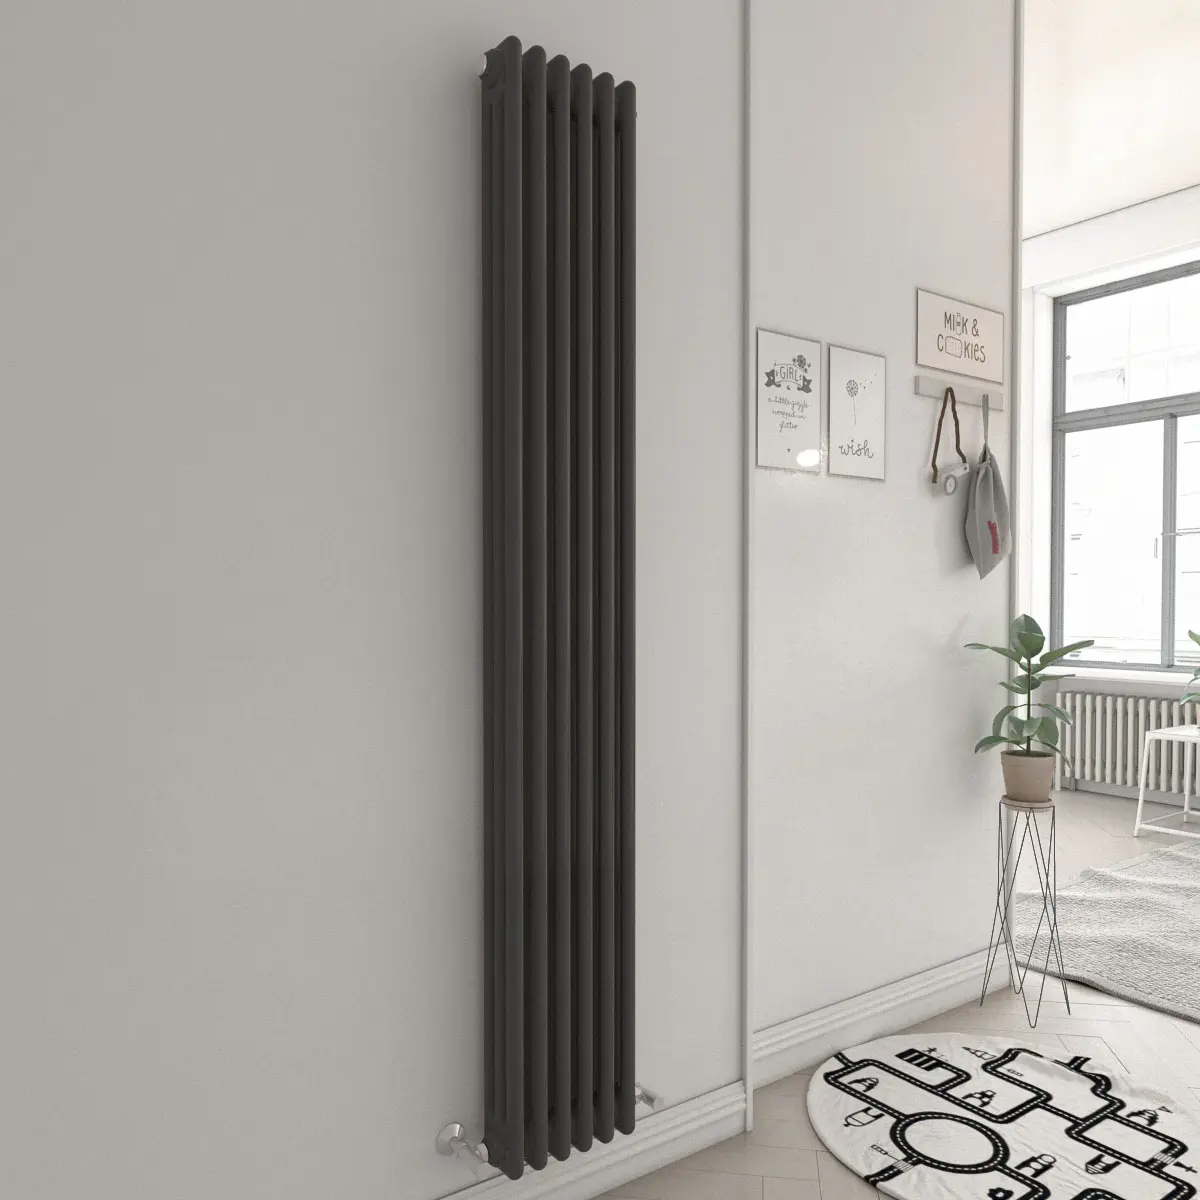 BODE di alta qualità all'ingrosso acciaio dolce camera radiatori antracite colonna 2/3 radiatore per la casa